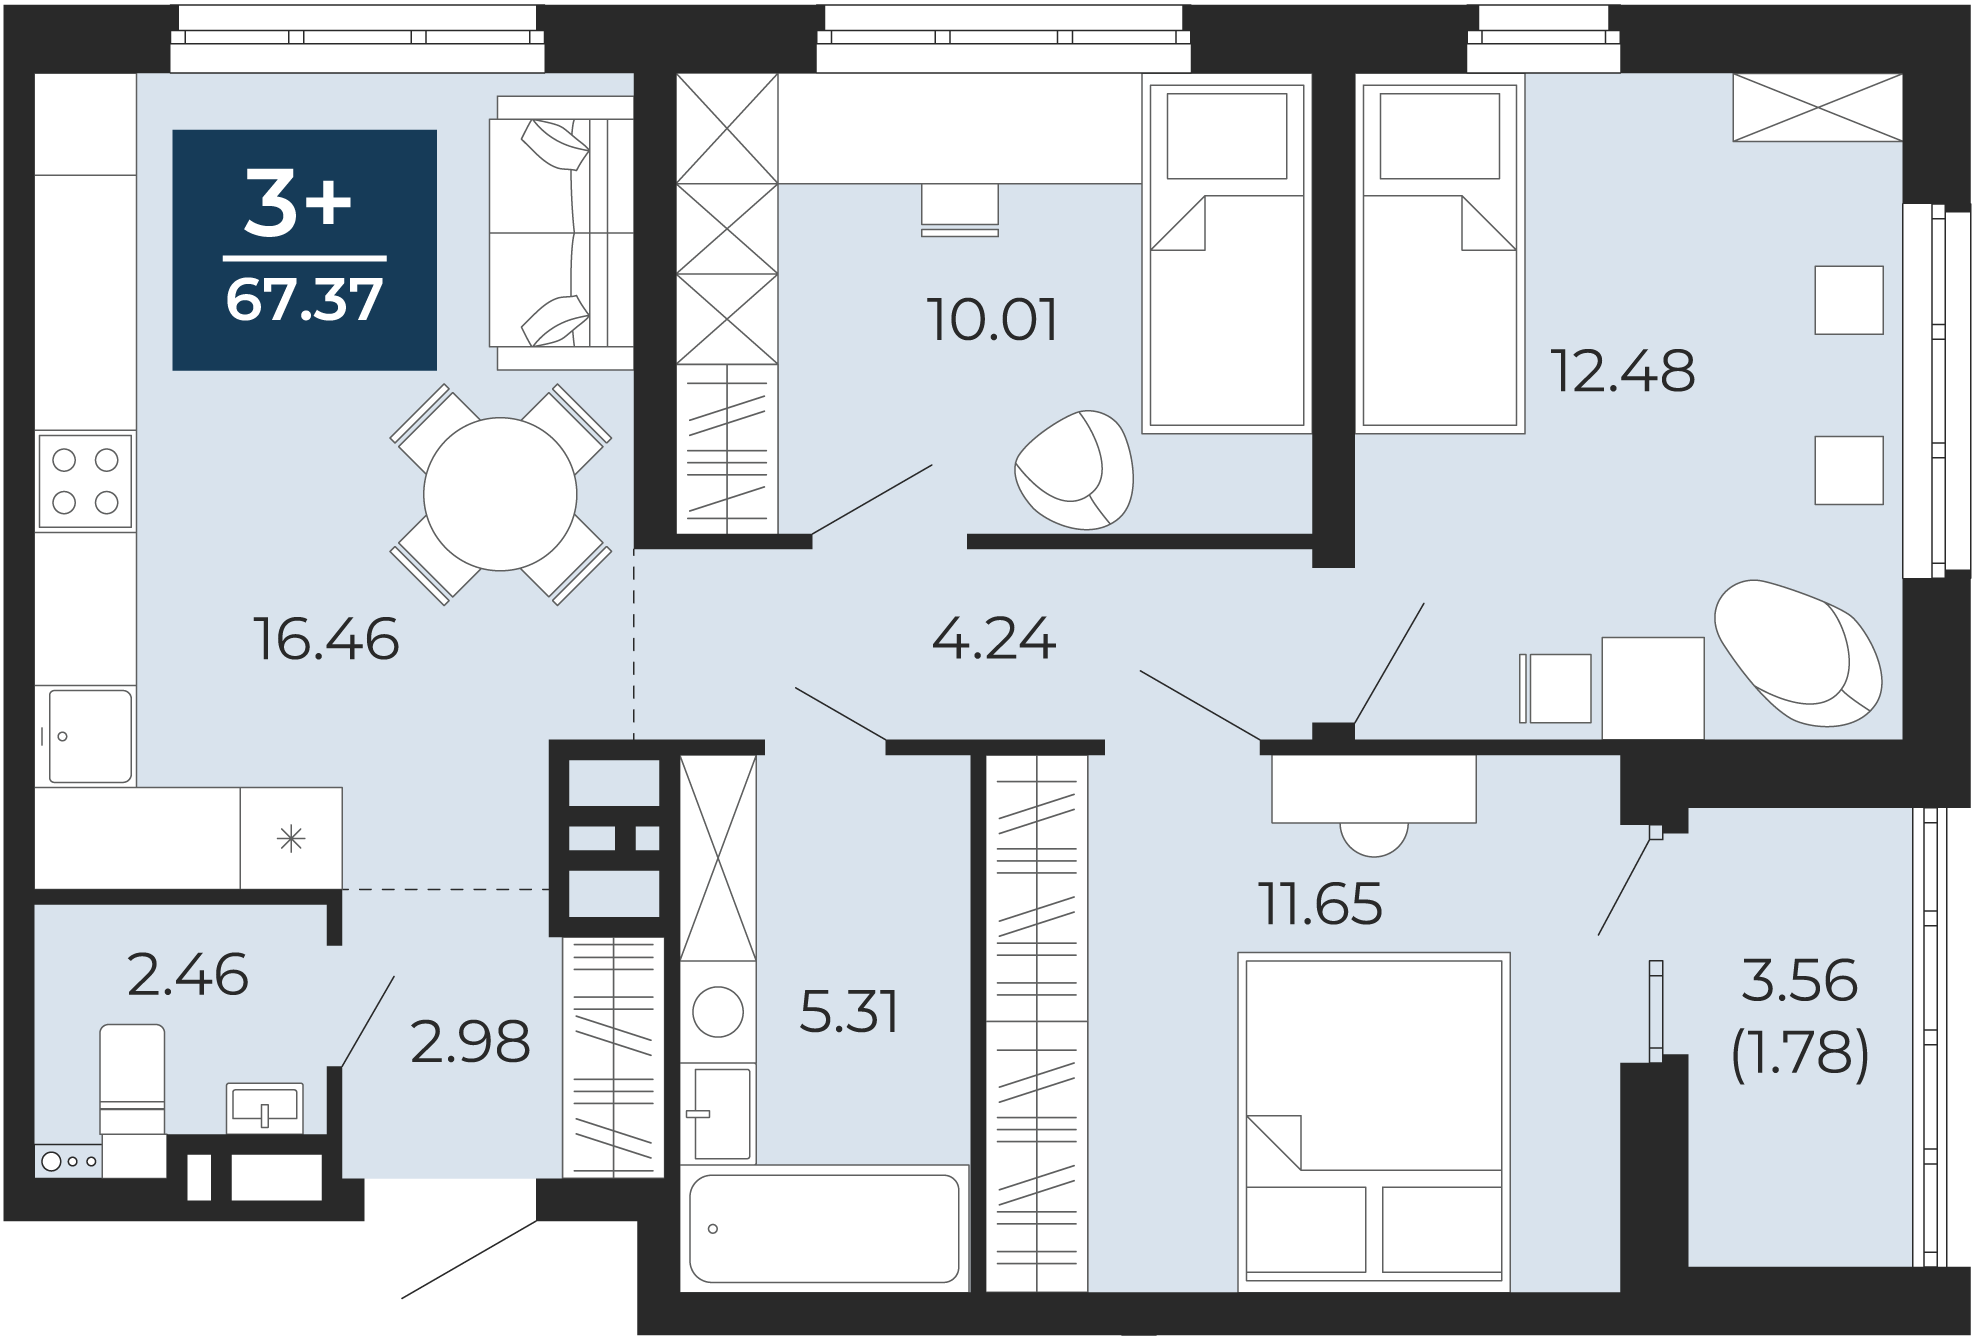 Квартира № 258, 3-комнатная, 67.37 кв. м, 9 этаж